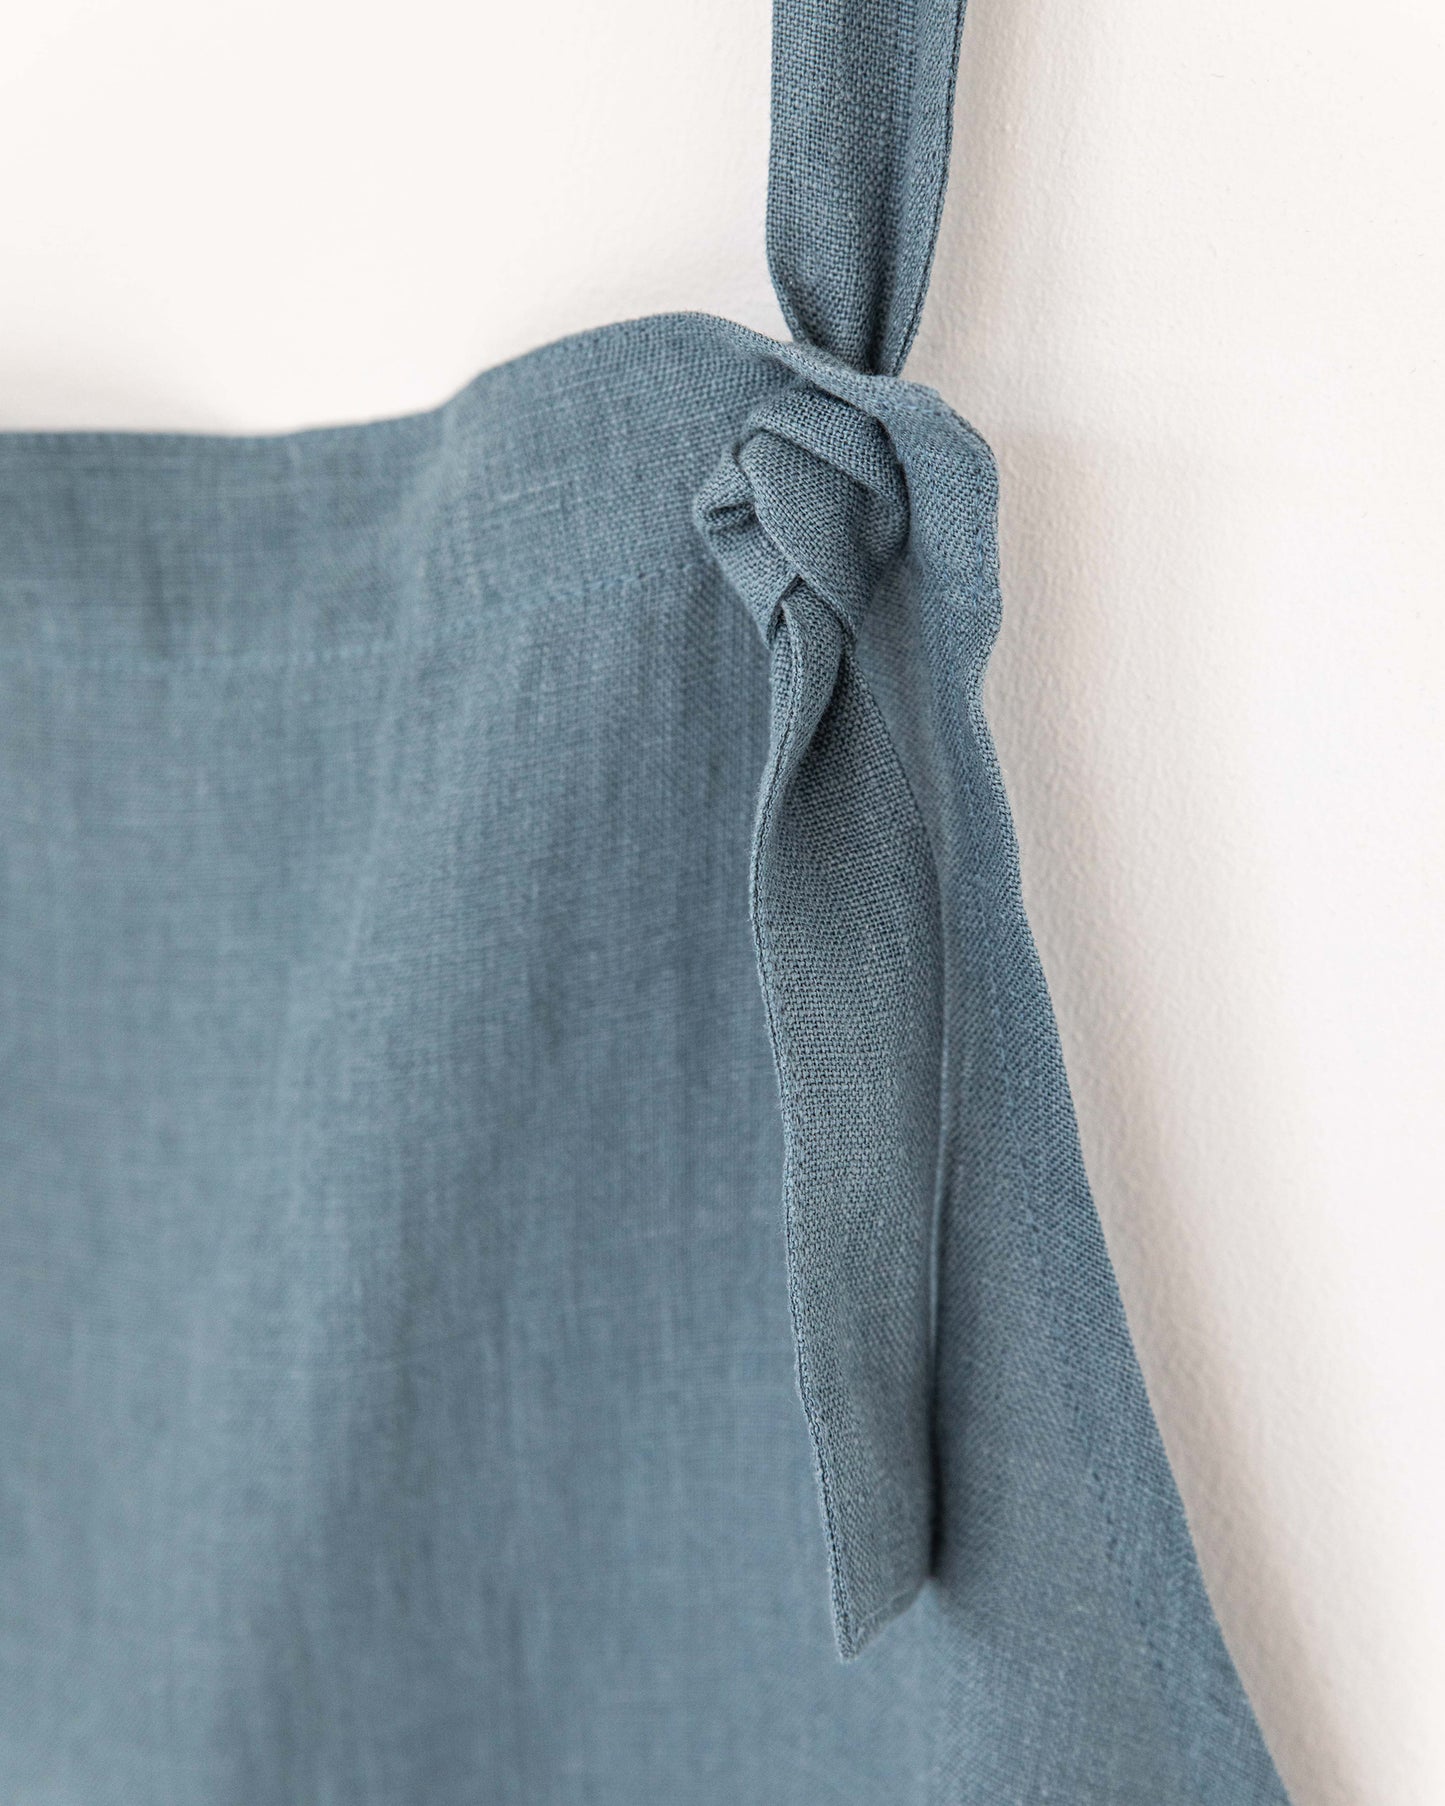 Men's linen bib apron in Gray blue - sneakstylesanctums